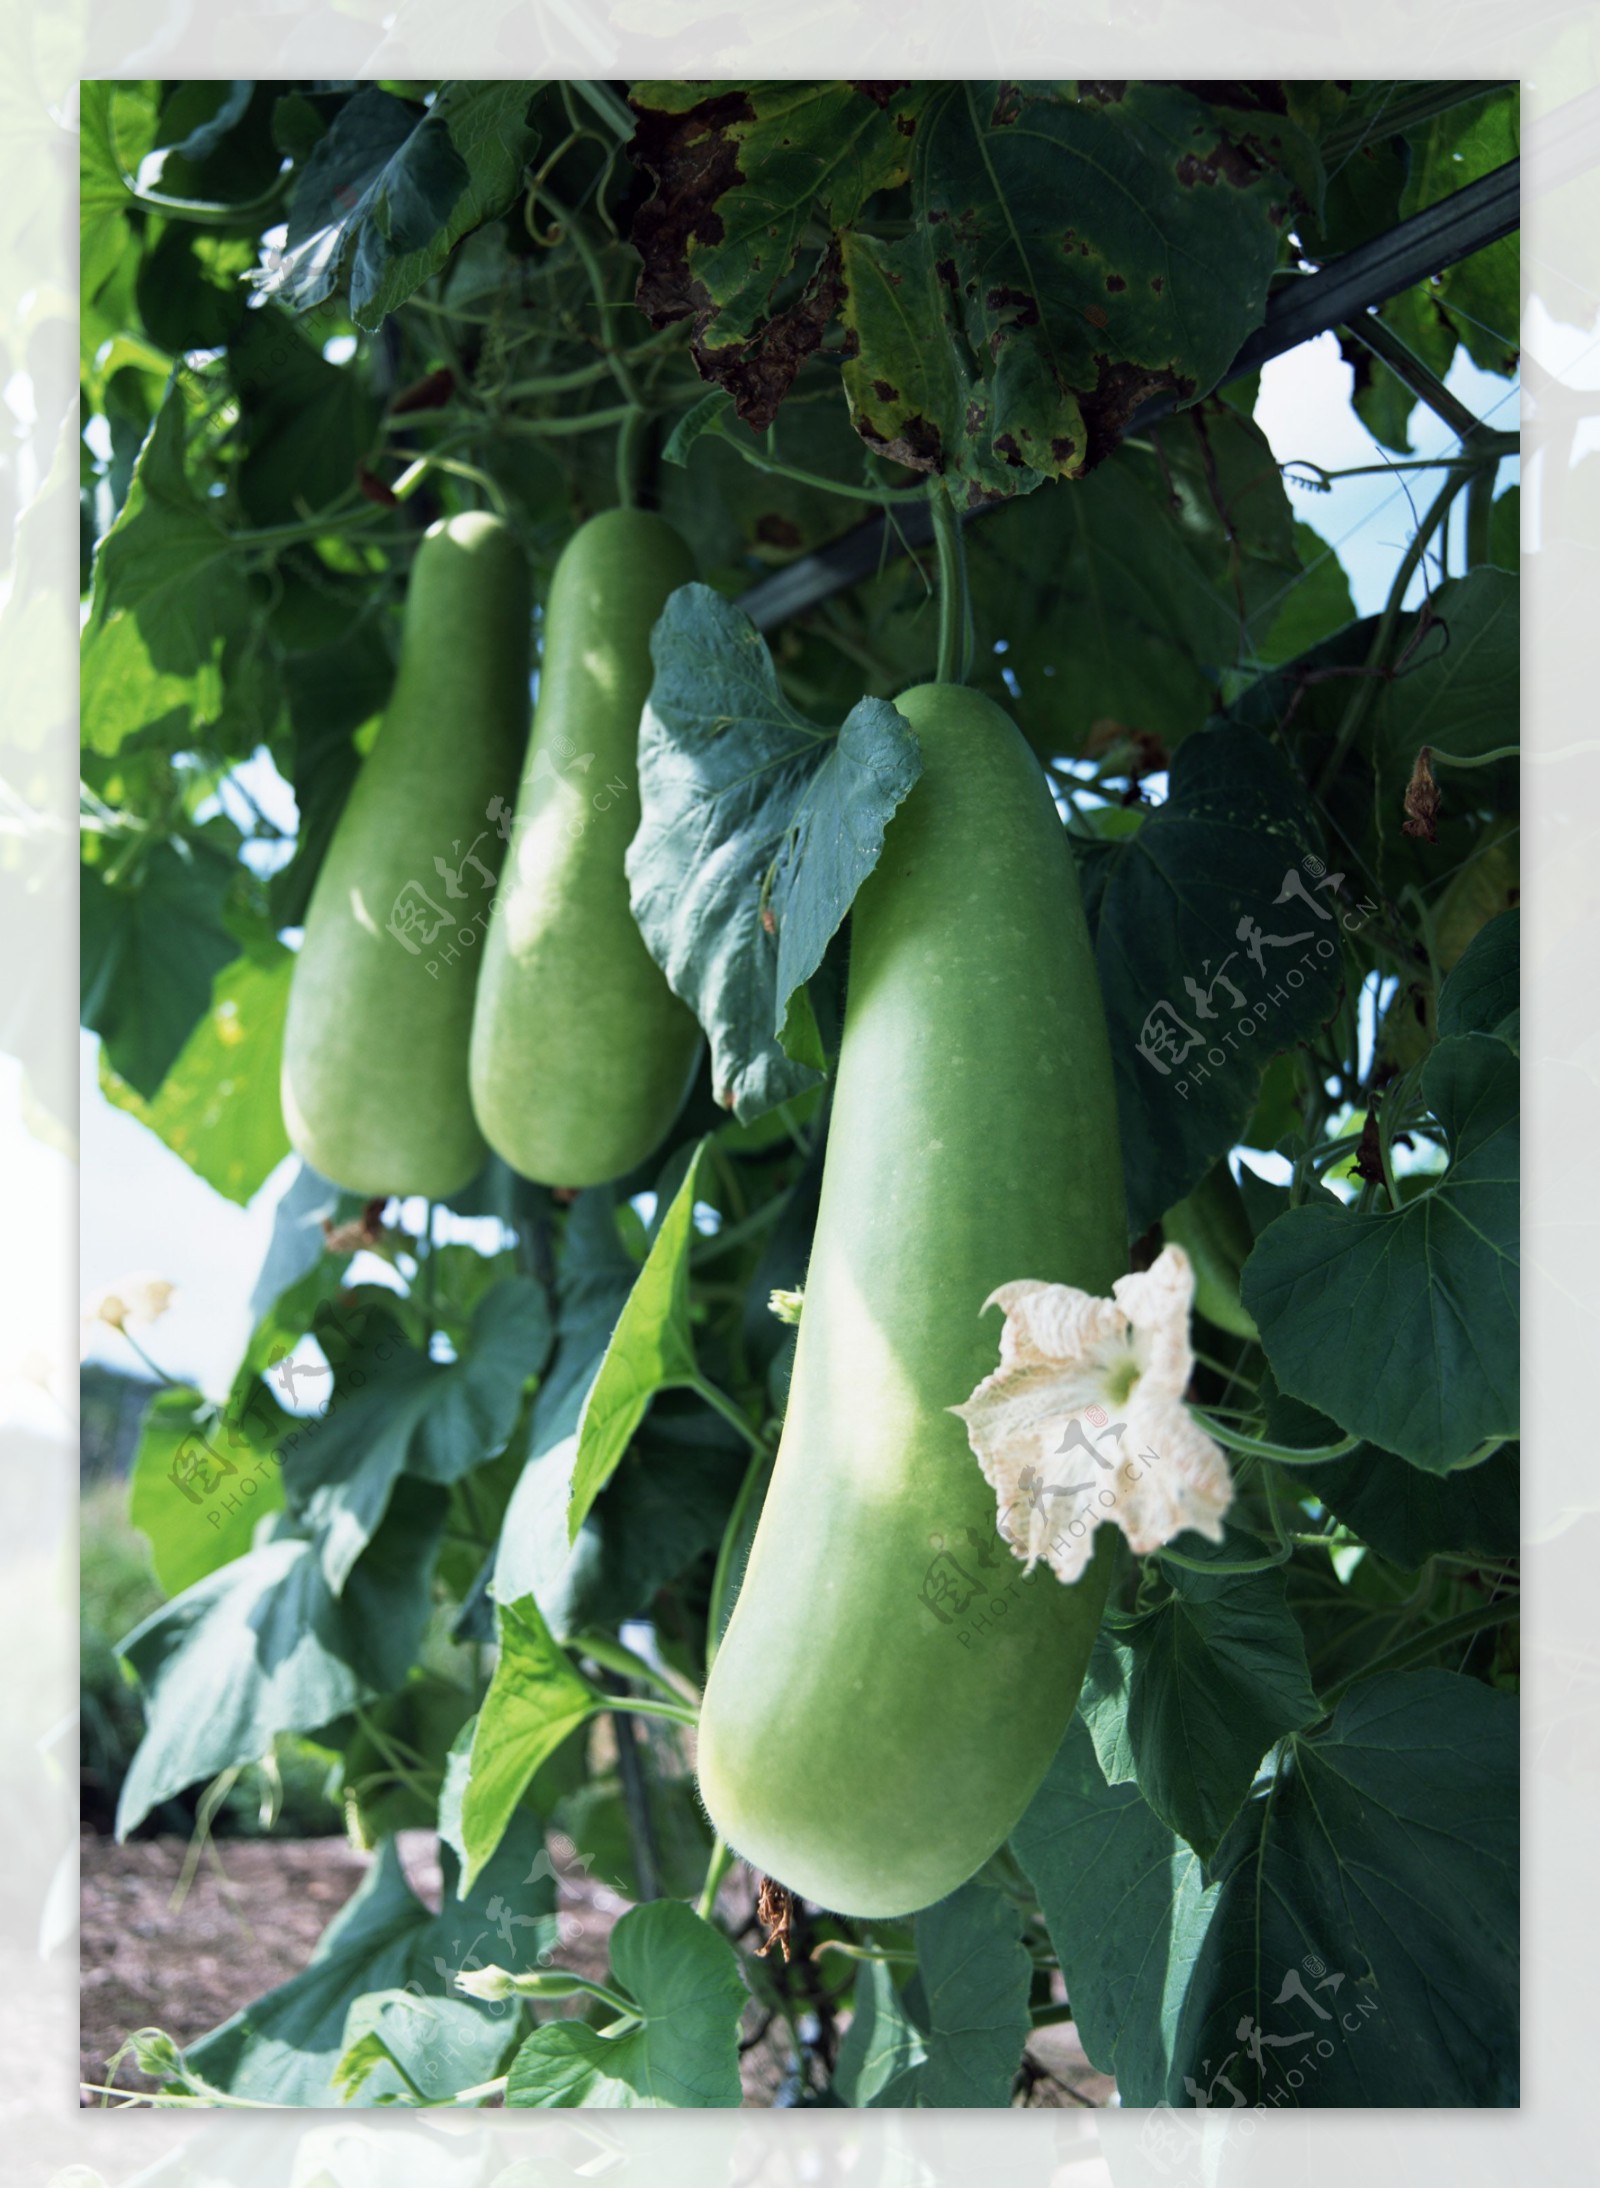 冬瓜怎样种植长得大、产量高？告诉你十个种植管理技巧 - 种植知识 - 花果之家